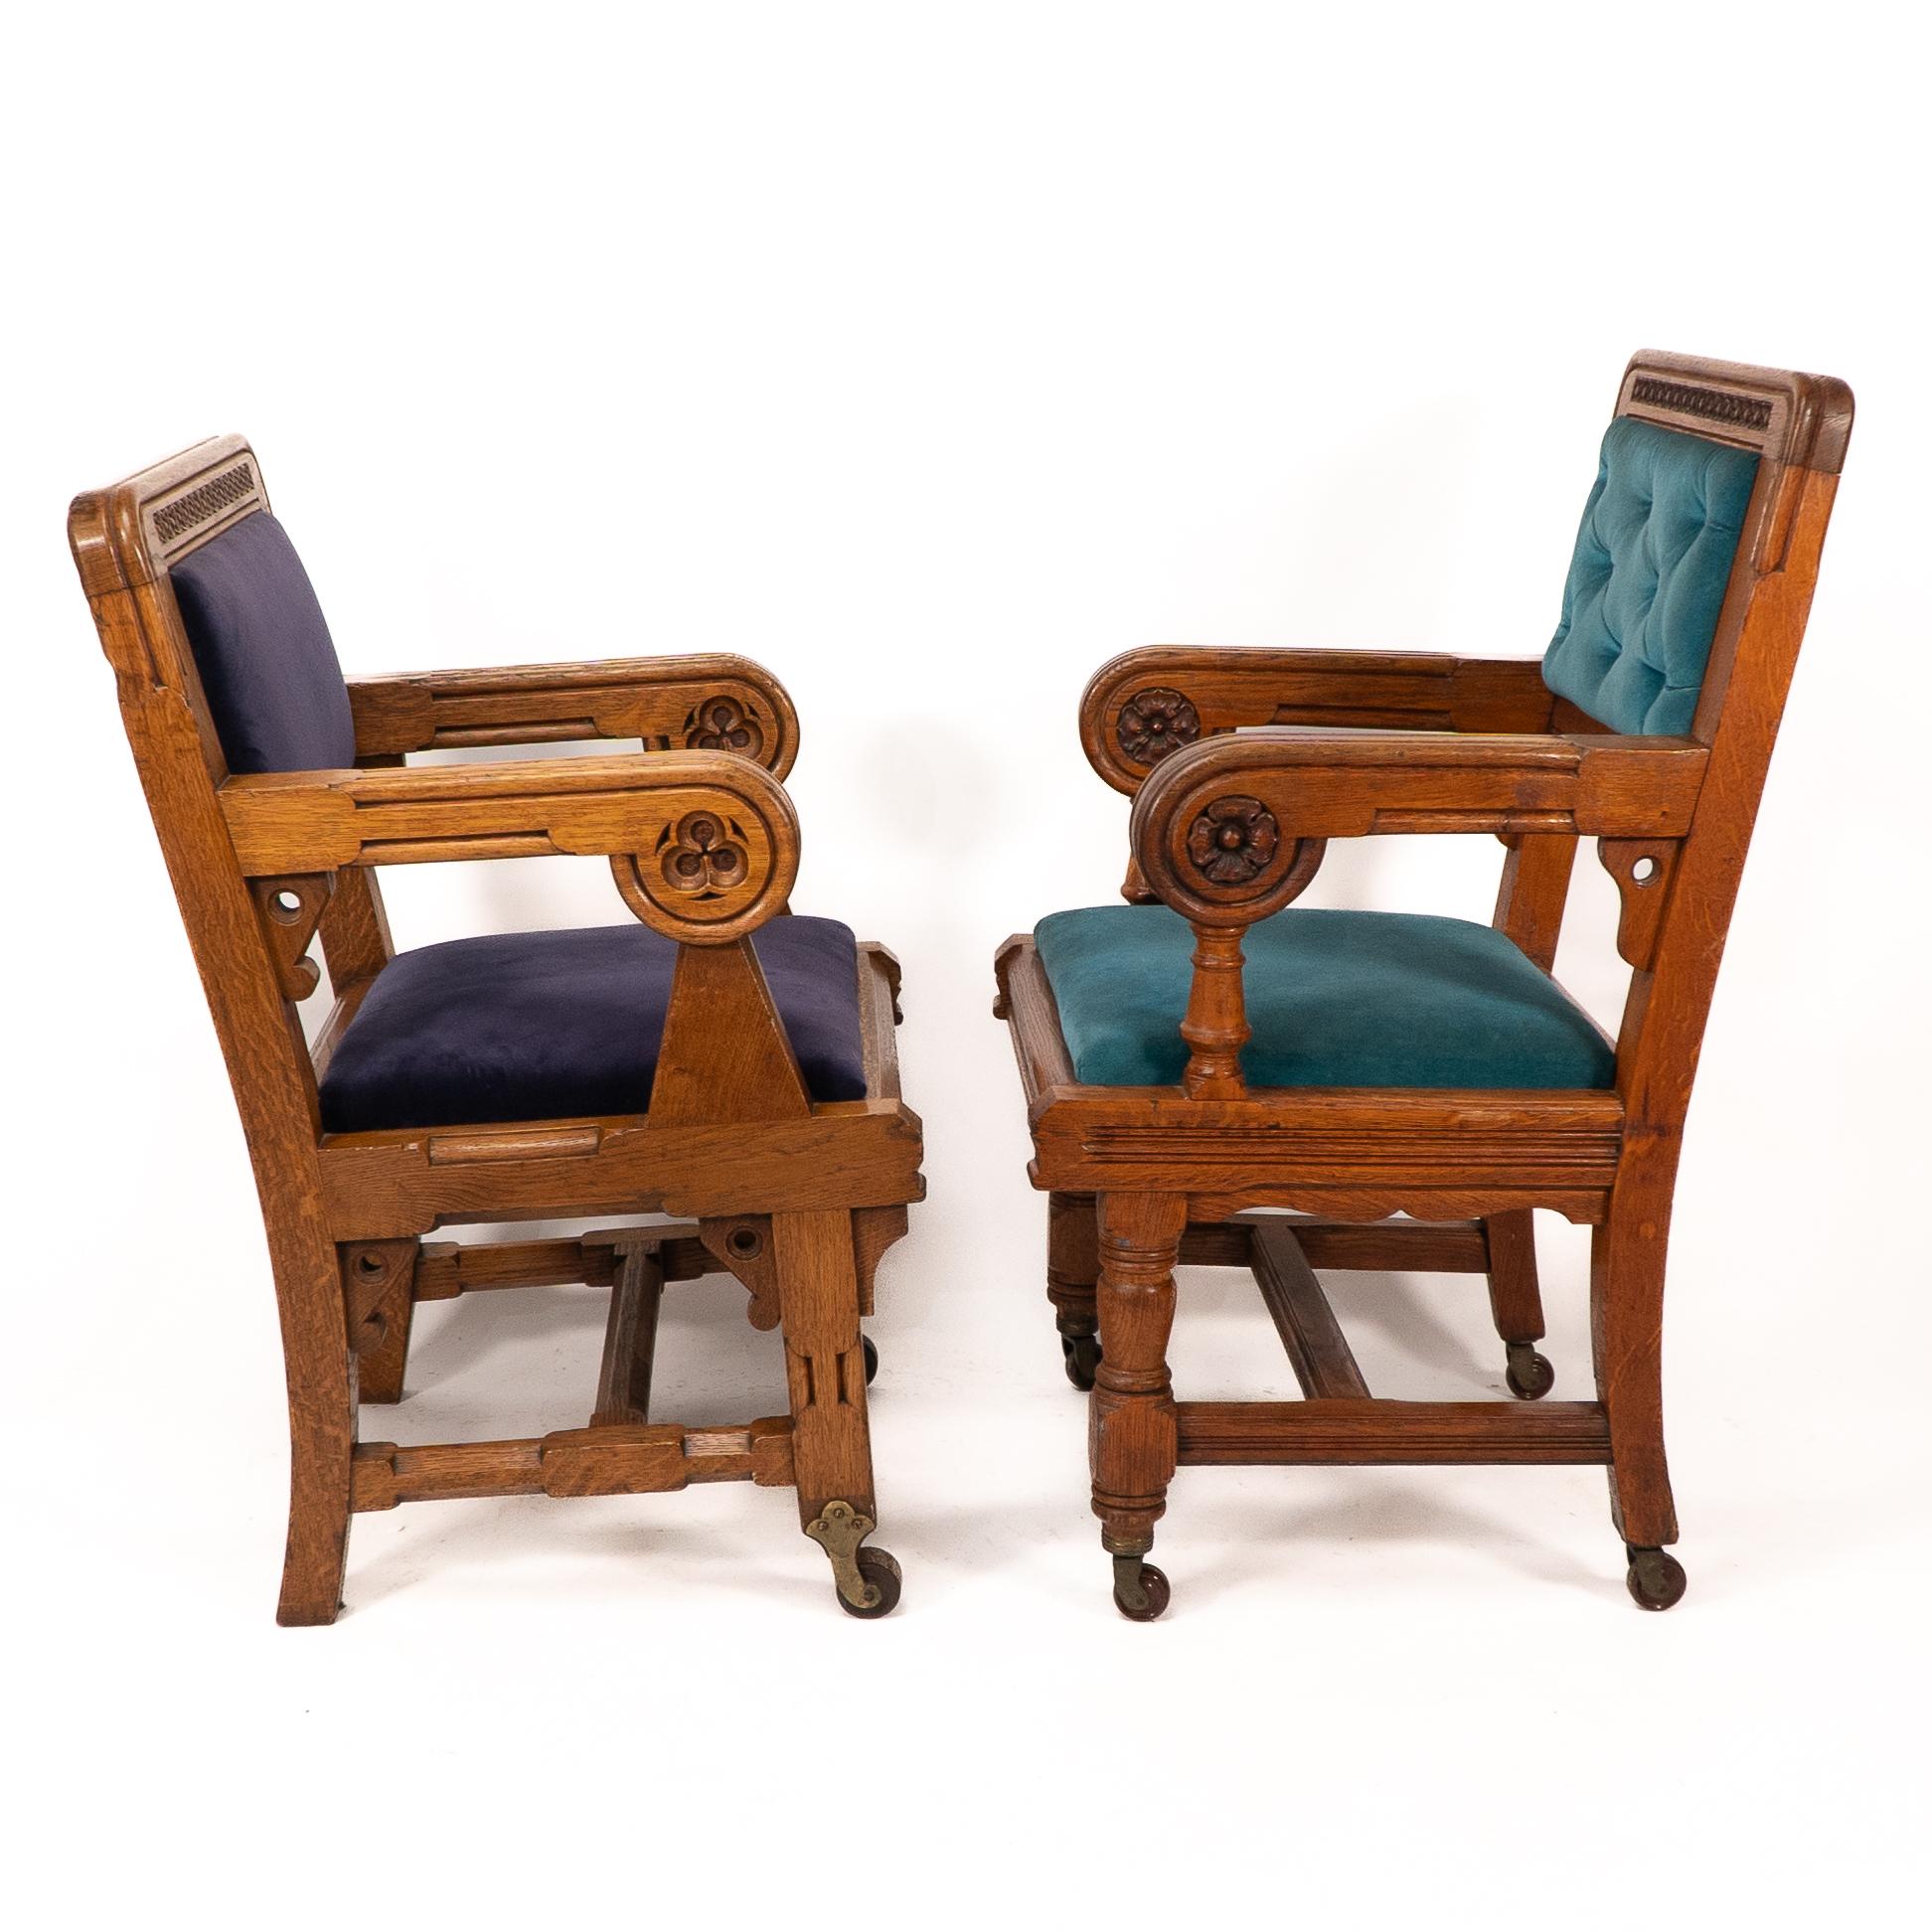 Bruce Talbert. Gillows von Lancaster. 
Zwei seltene Sessel aus der Zeit der Gotik.
*Die beiden hier gezeigten mit dunkel- und hellblauem Bezug sind verfügbar, der mit braunem Bezug ist bereits verkauft*.
Die beiden blauen sind fast identisch, außer